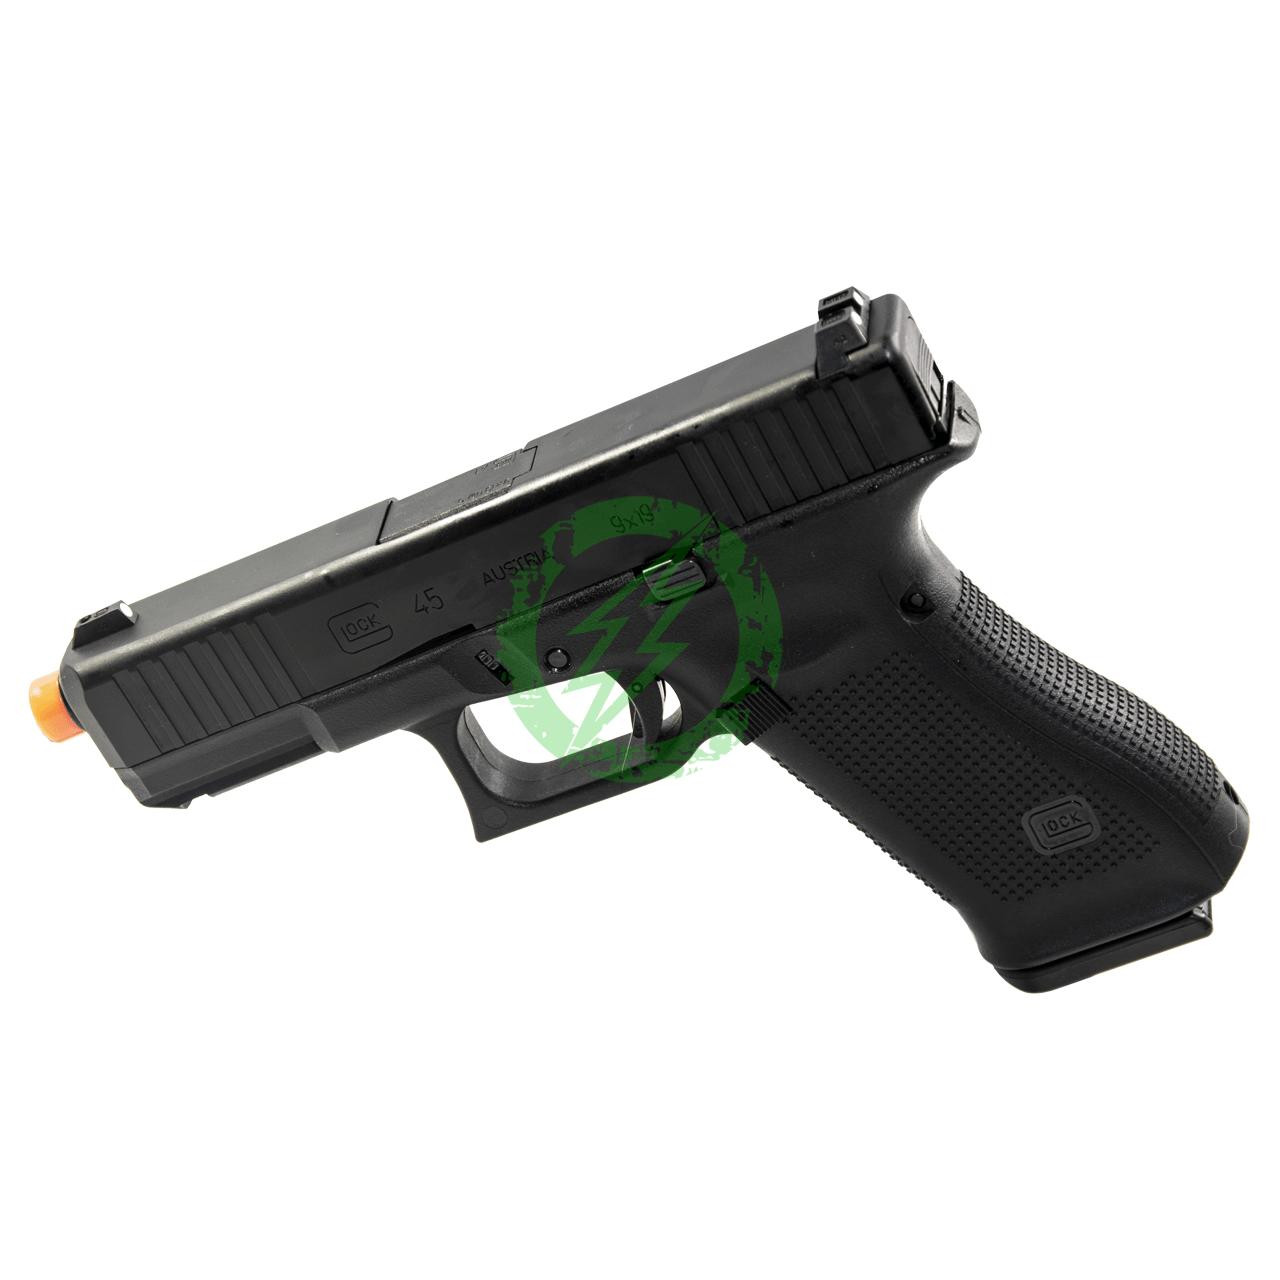 Umarex Glock 17 Gen 5 GBB Airsoft Pistol (by VFC), gen 5 glock 